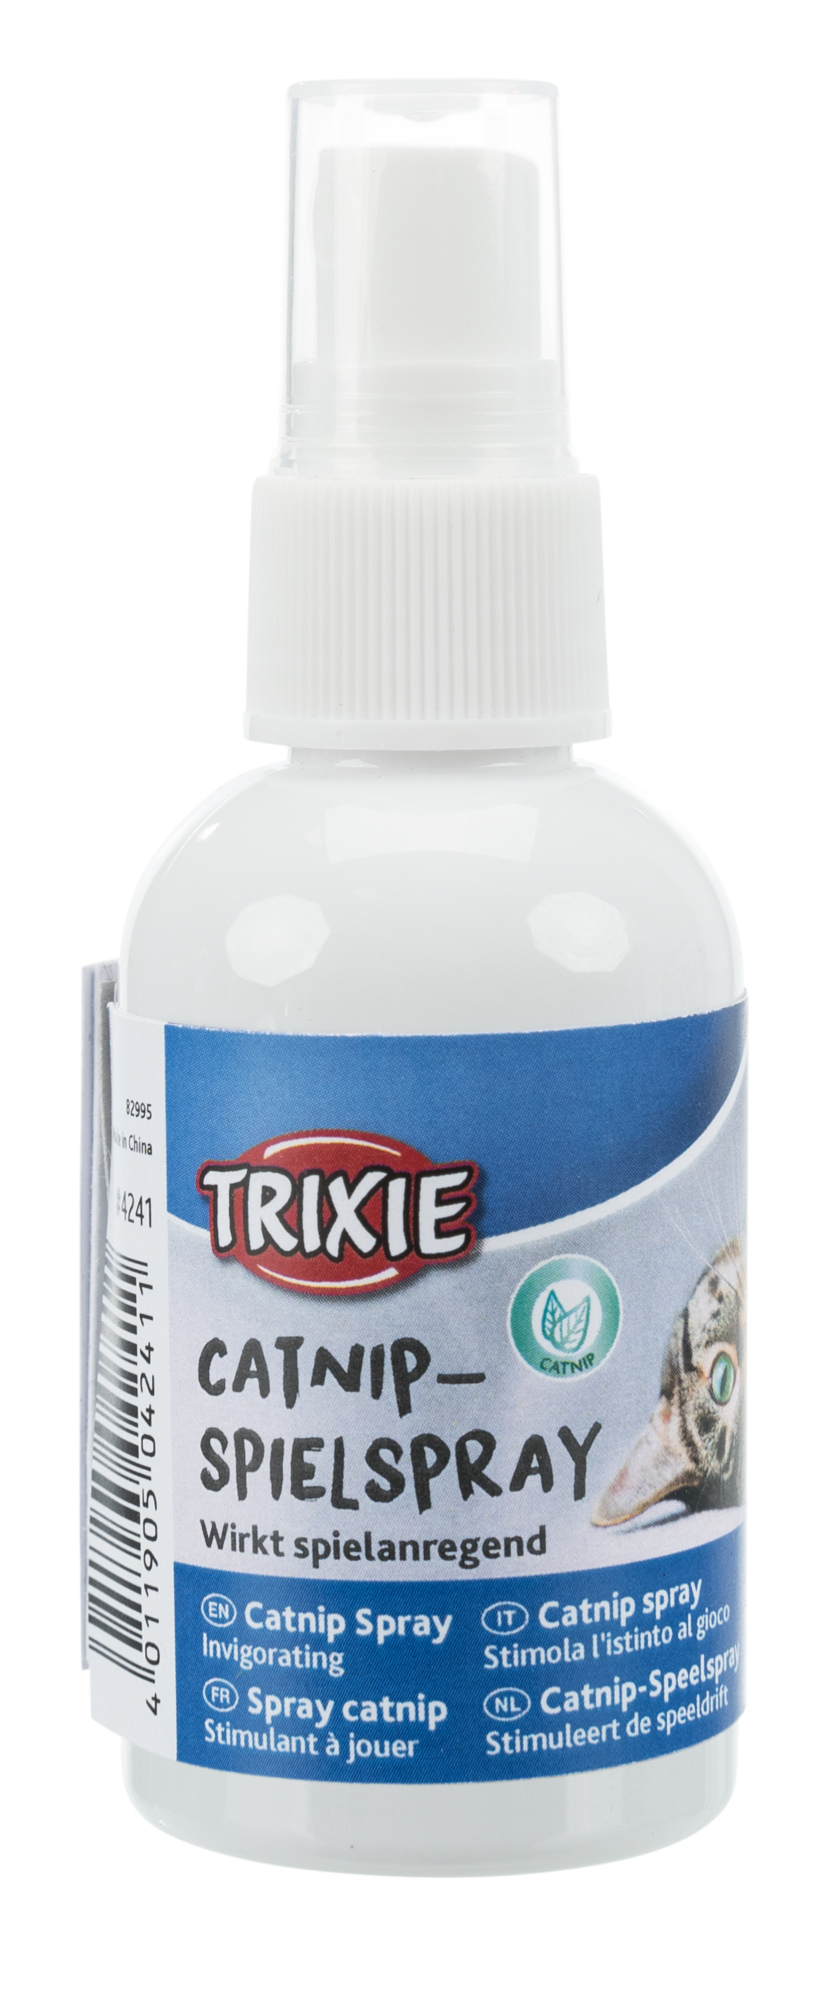 Trixie Catnip-Spielspray 50ml